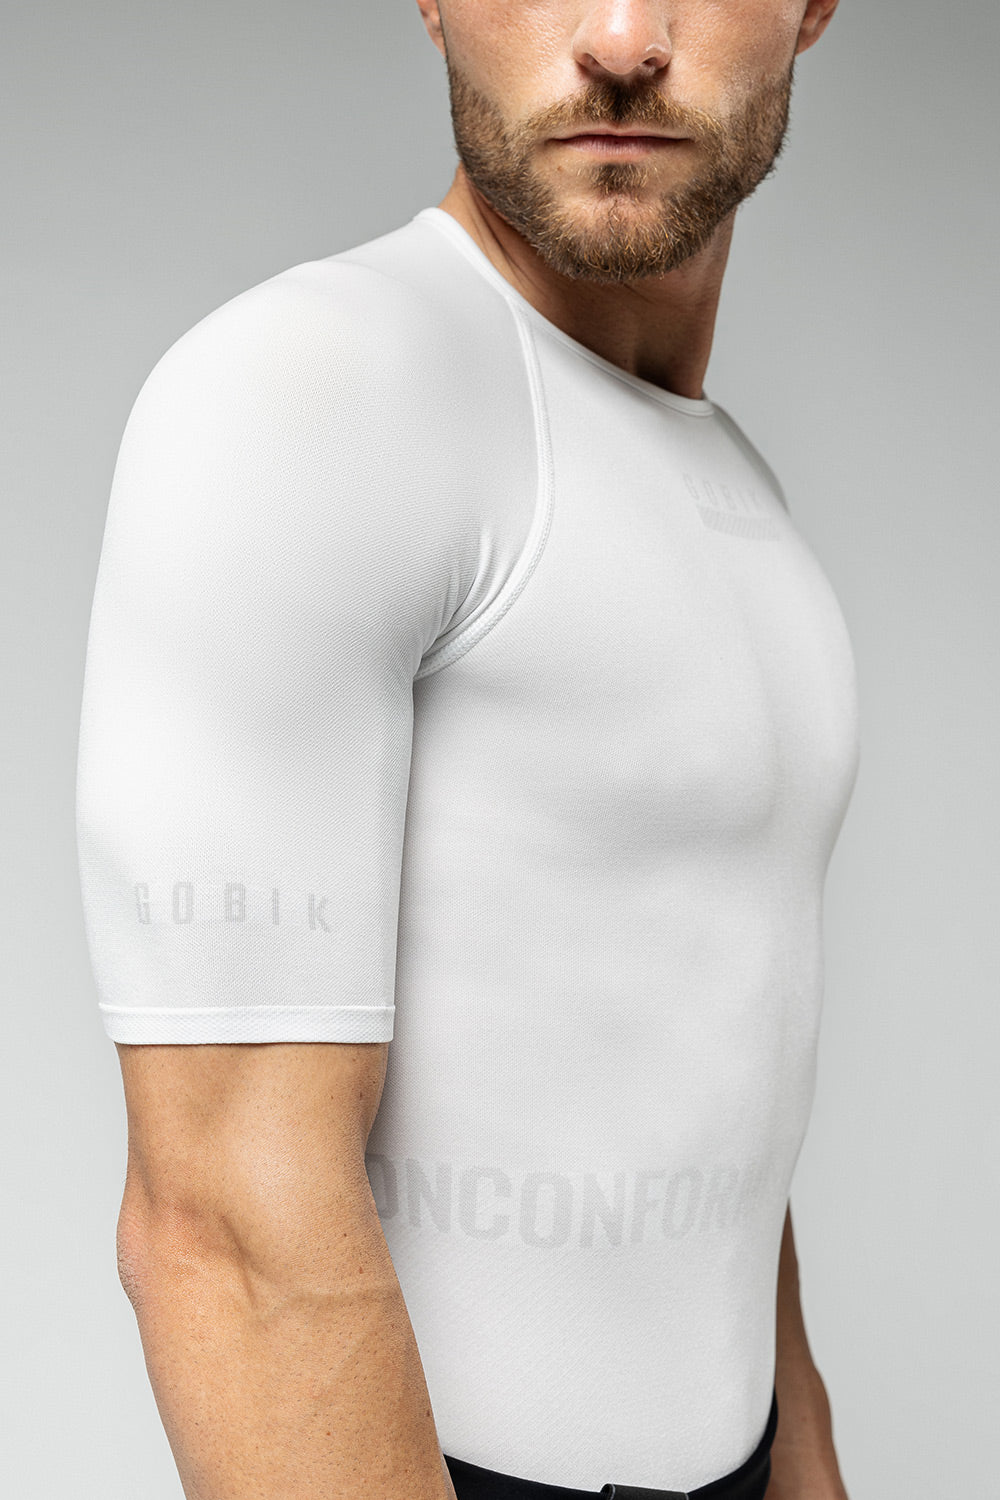 Camiseta sin mangas para hombre Gobik Limber Skin Icelandic